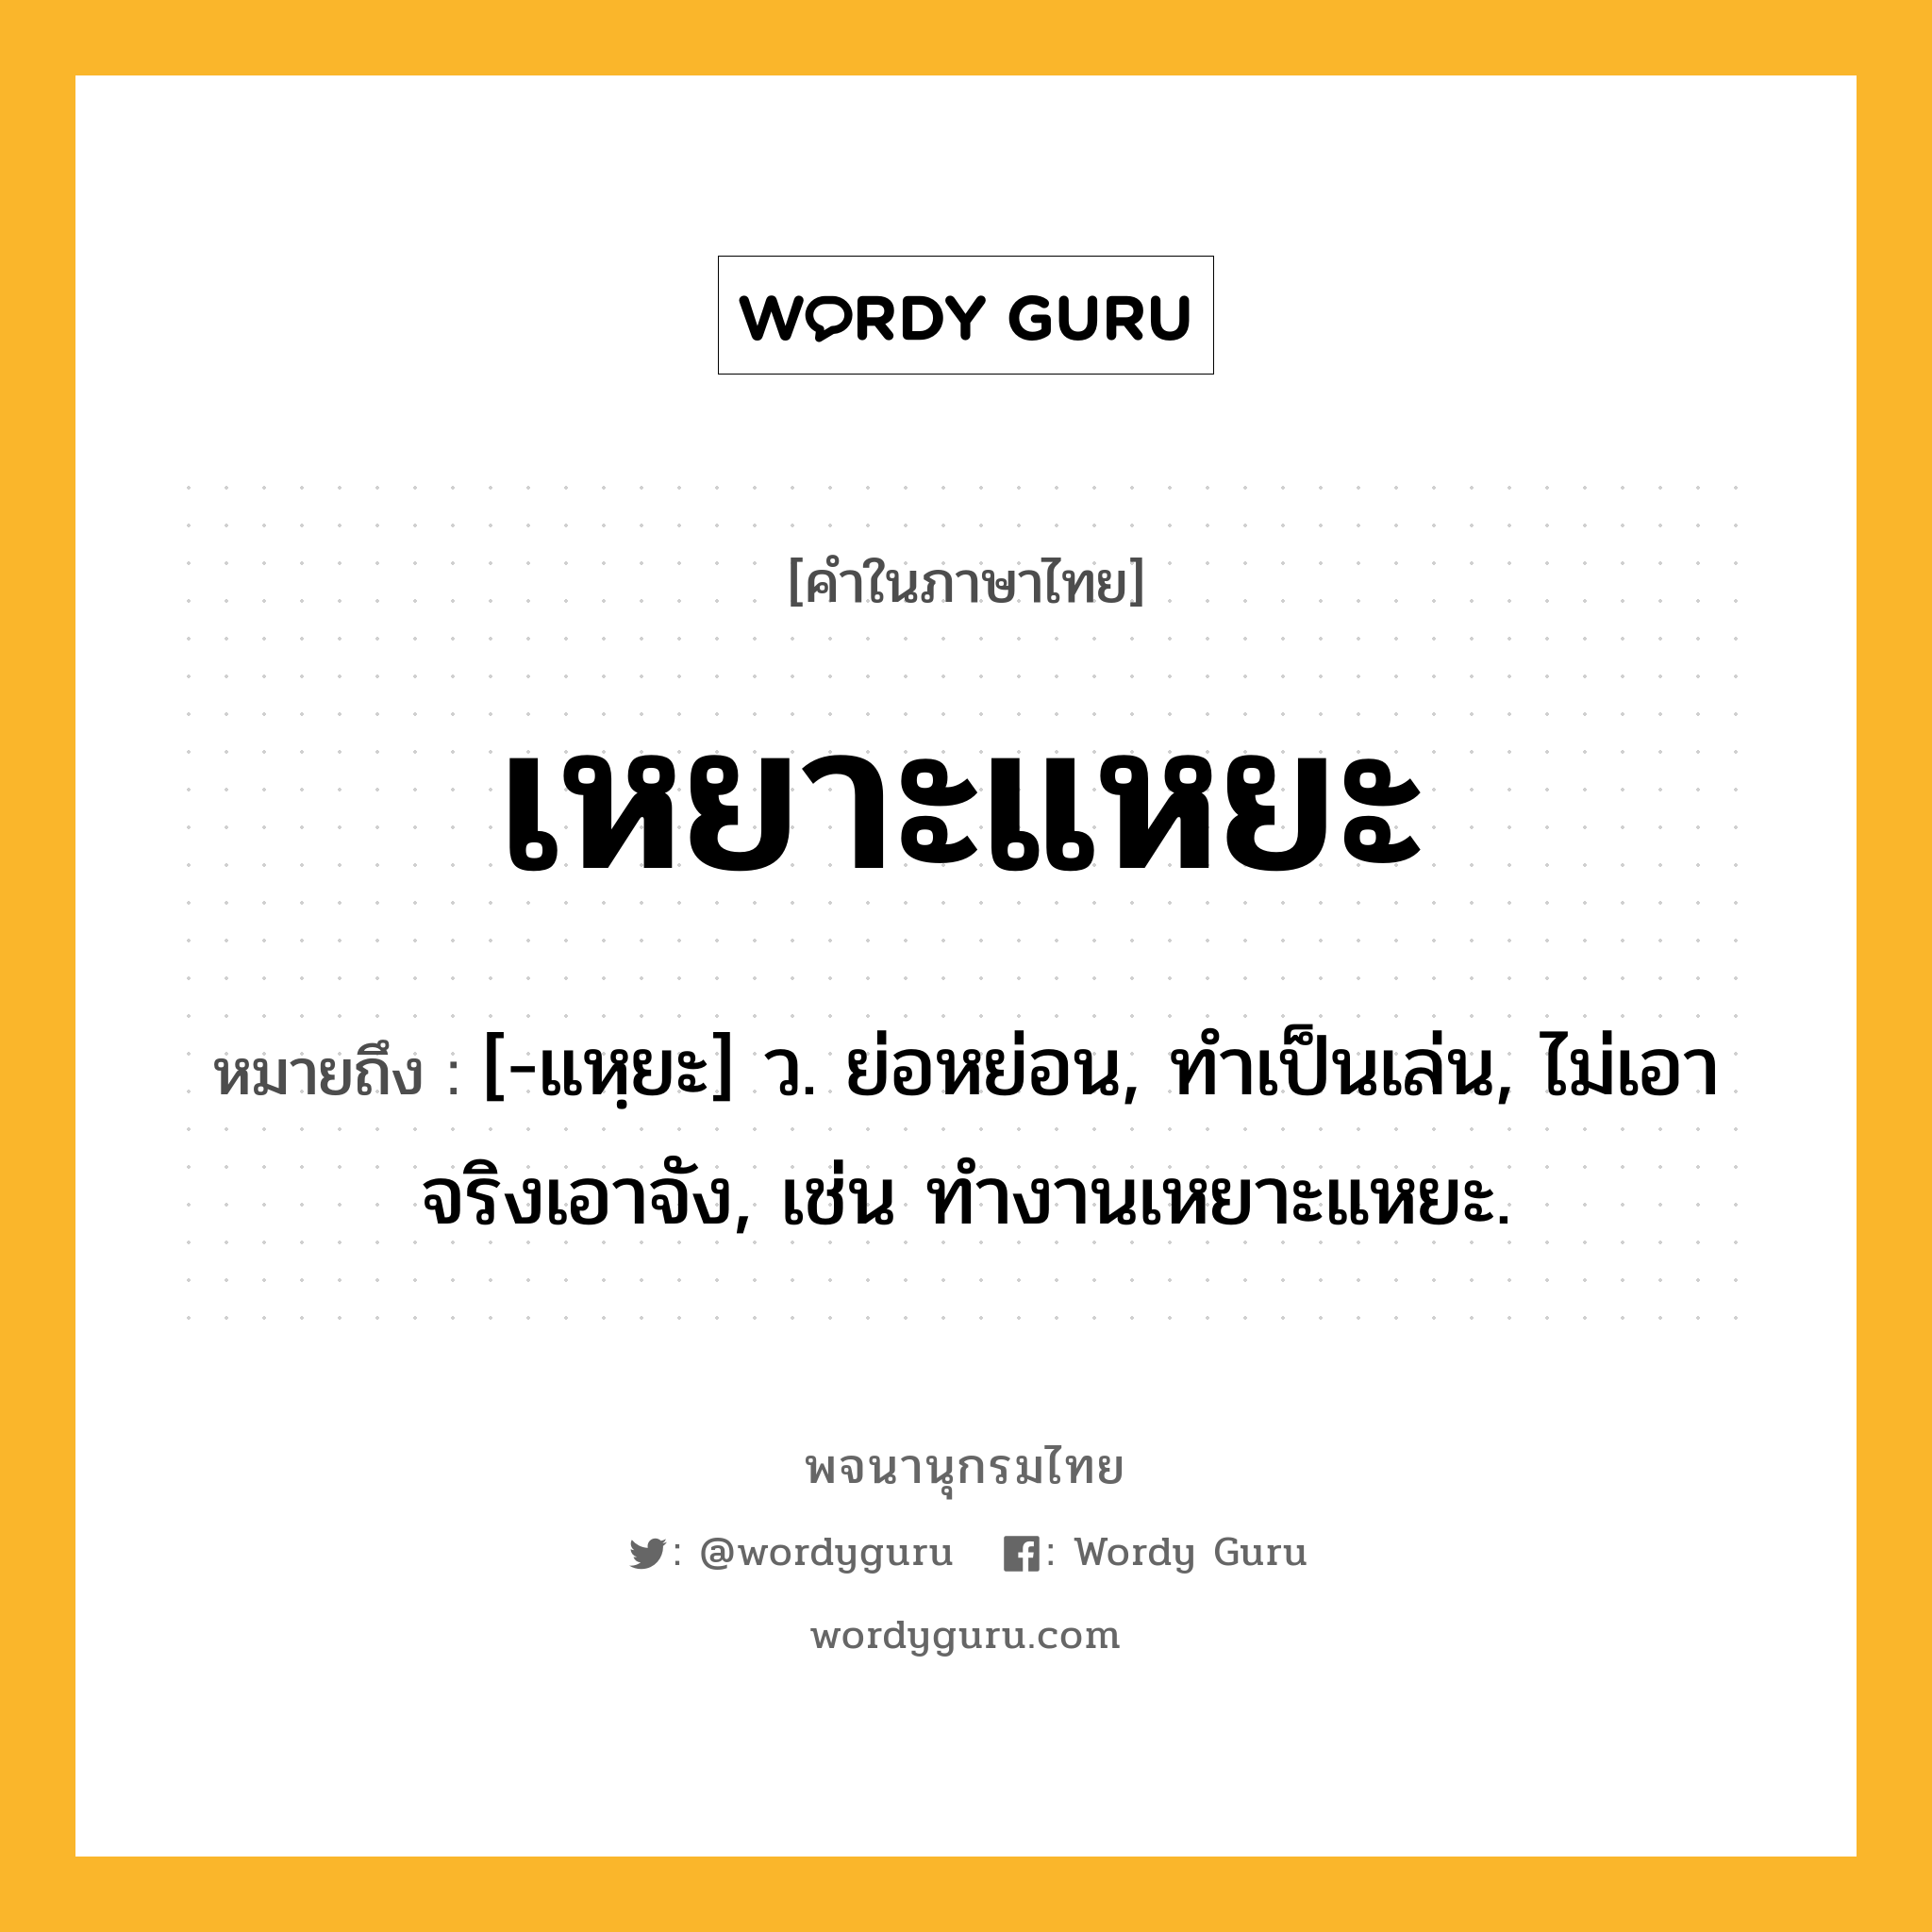 เหยาะแหยะ หมายถึงอะไร?, คำในภาษาไทย เหยาะแหยะ หมายถึง [-แหฺยะ] ว. ย่อหย่อน, ทําเป็นเล่น, ไม่เอาจริงเอาจัง, เช่น ทำงานเหยาะแหยะ.